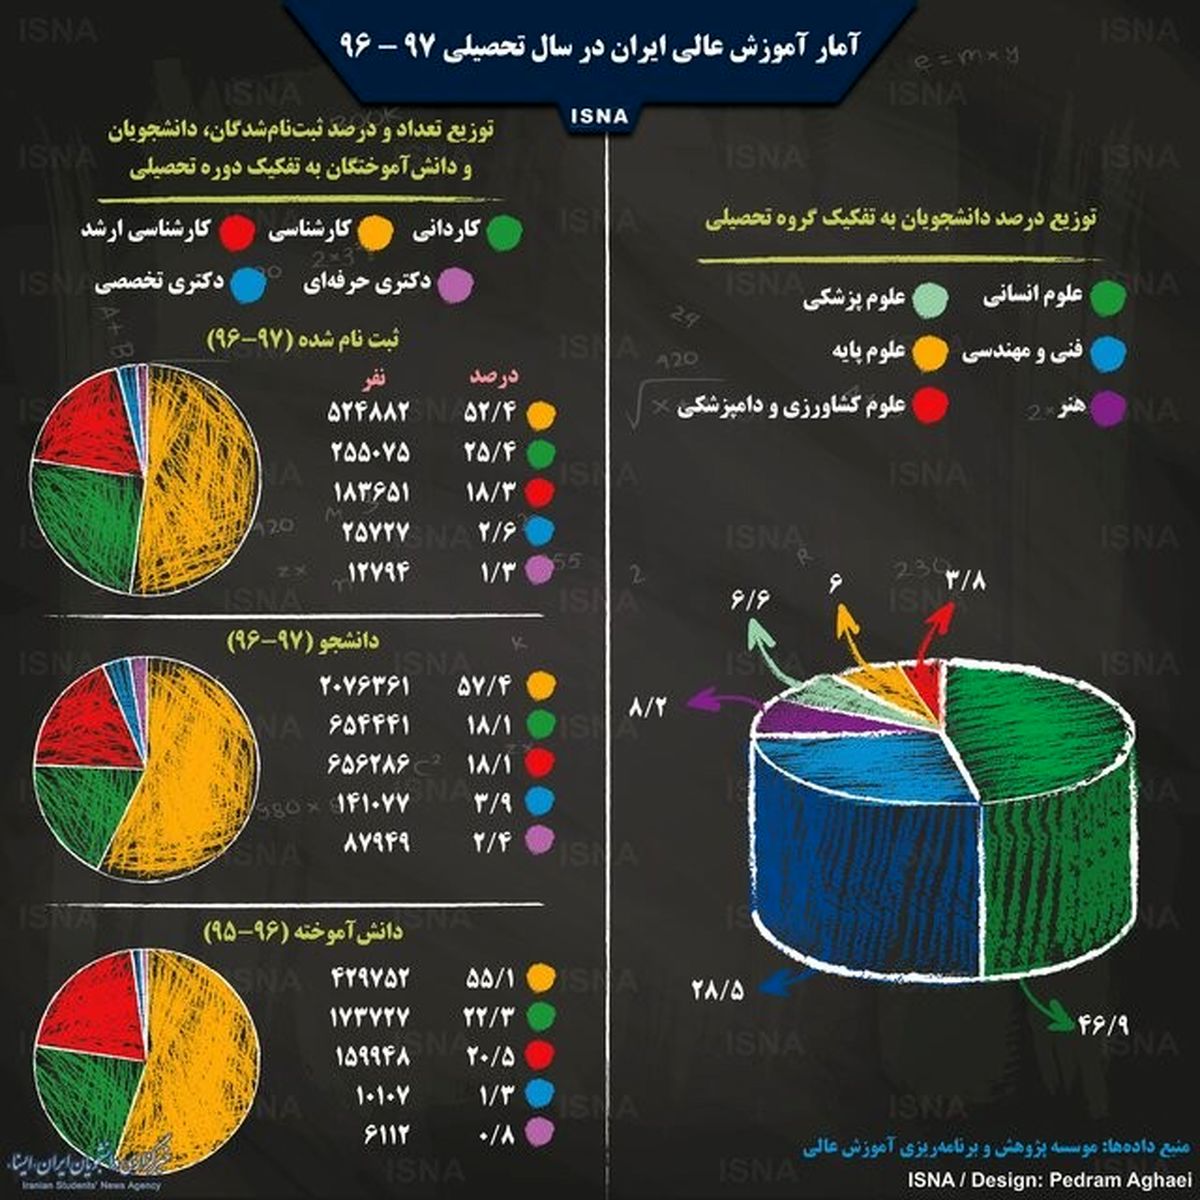 اینفوگرافی / آمار آموزش عالی ایران در سال تحصیلی ۹۷ - ۹۶